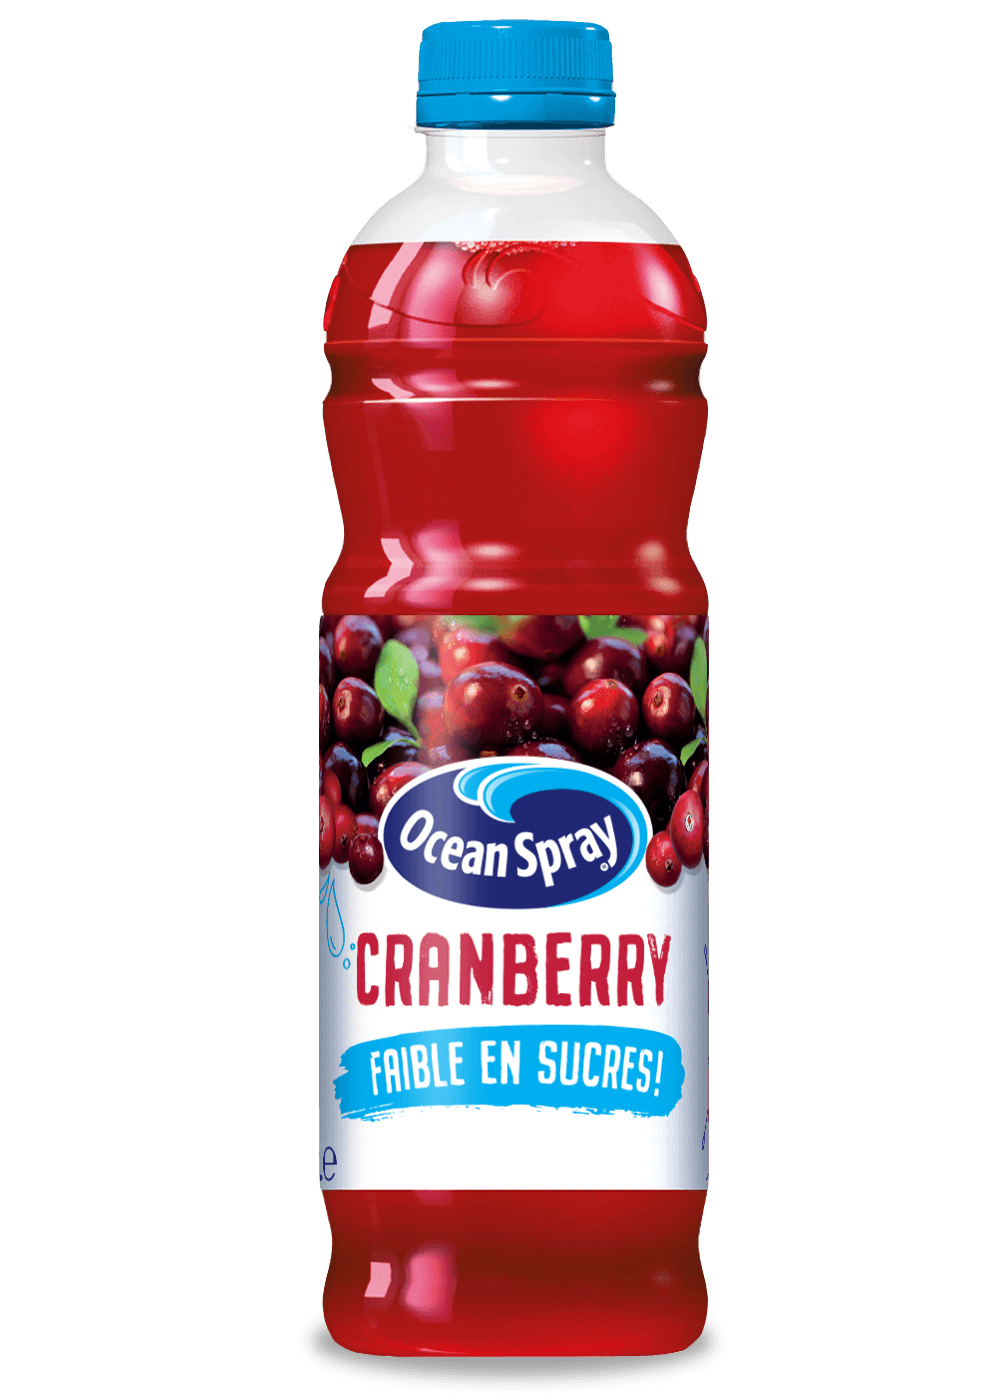 Avec le jus de cranberry Ocean Sprayon a tout bon pour rester en forme